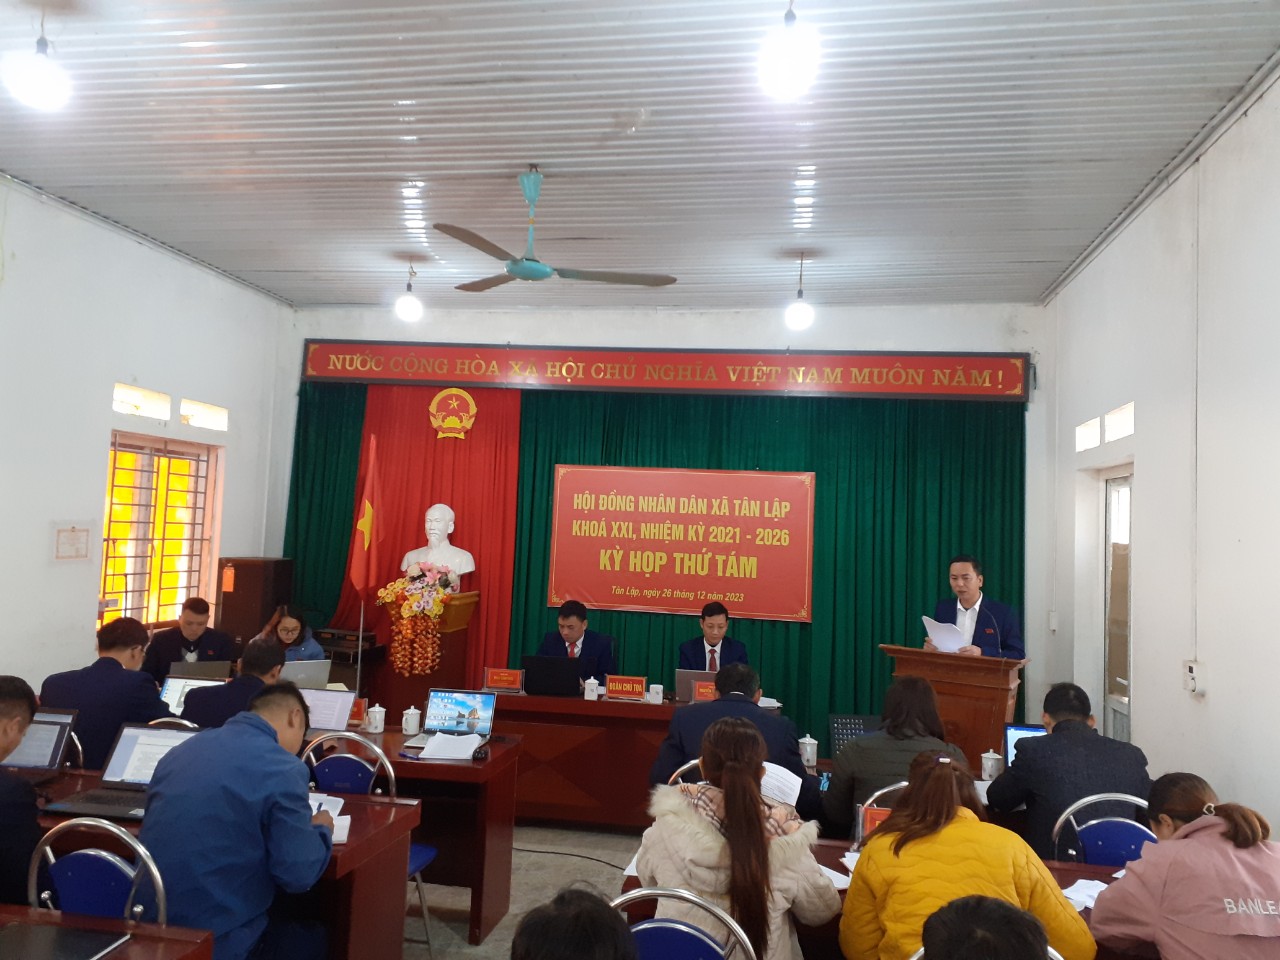 Kỳ họp thứ tám Hội đồng nhân dân xã Tân Lập khóa XXI, nhiệm kỳ 2021-2026